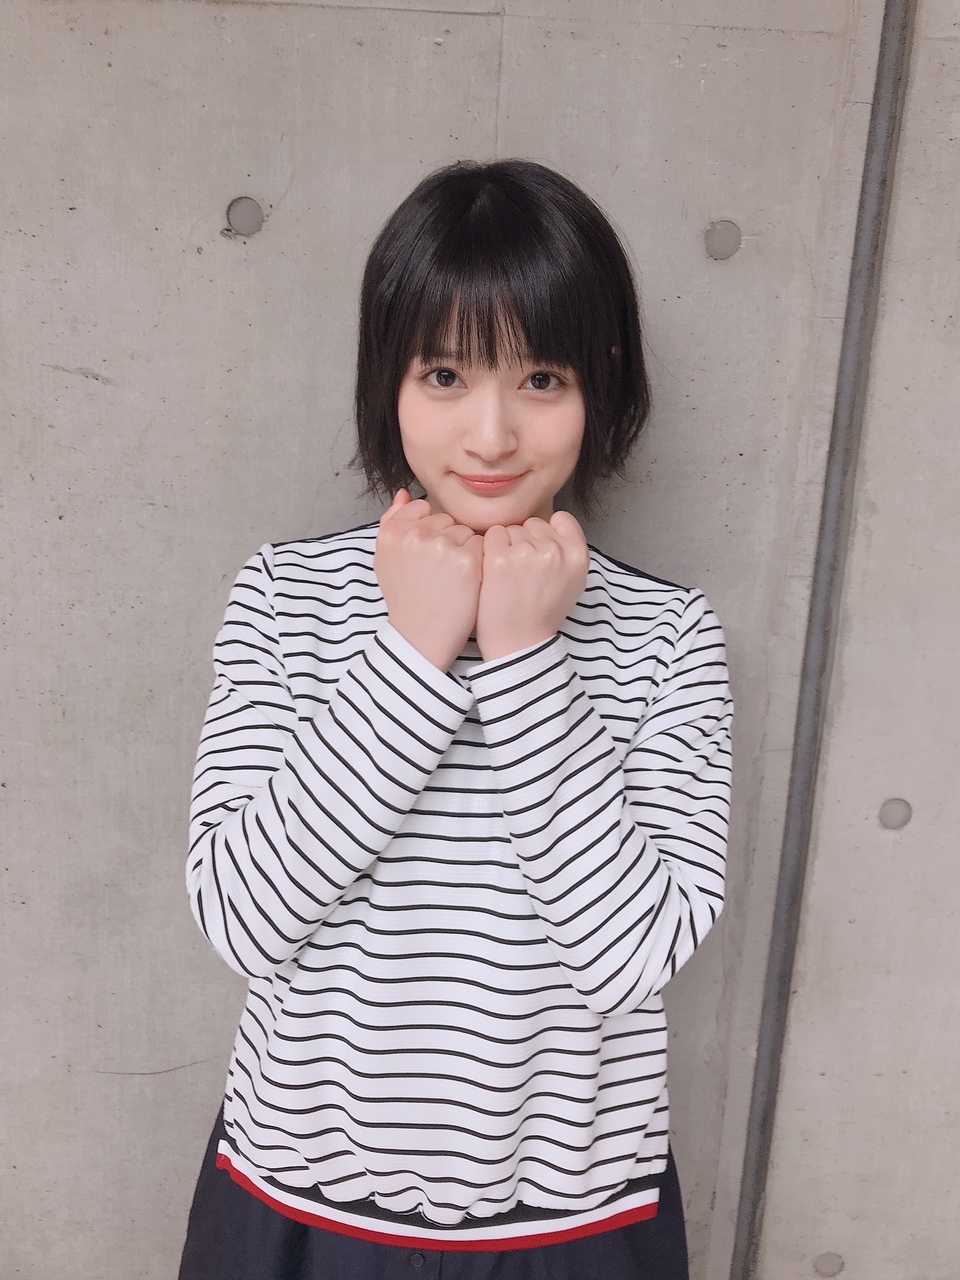 Oda Nana : Keyakizaka46 | 織田奈那 : 欅坂46